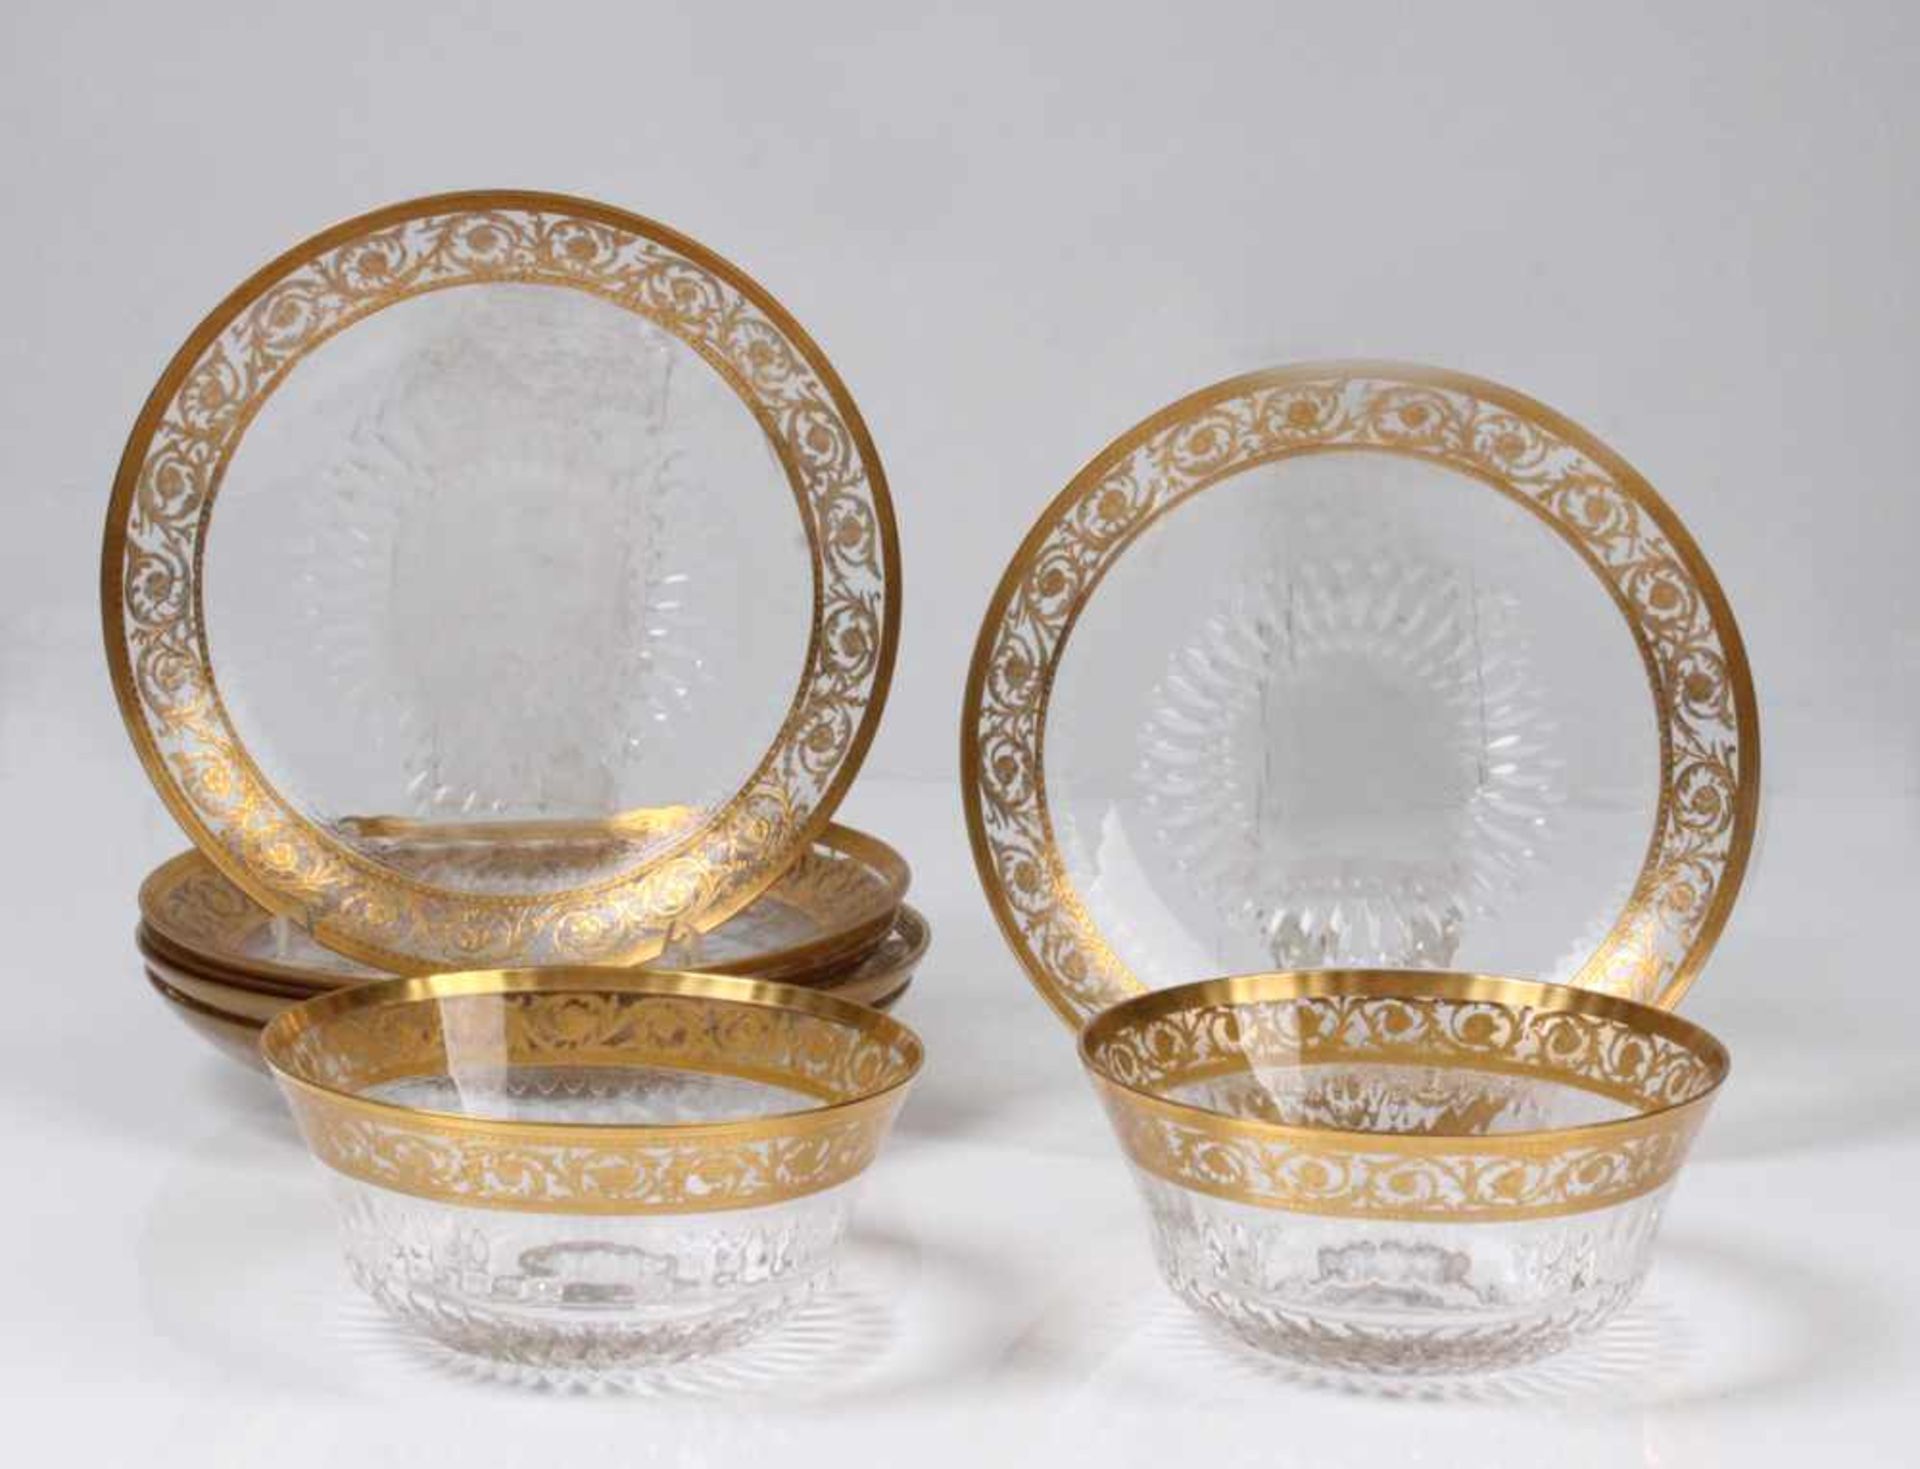 Konvolut.Frankreich, 20. Jh. Saint Louis. "Thistle Gold". 8-tlg. Sechs Glasteller, zwei Glasschalen.